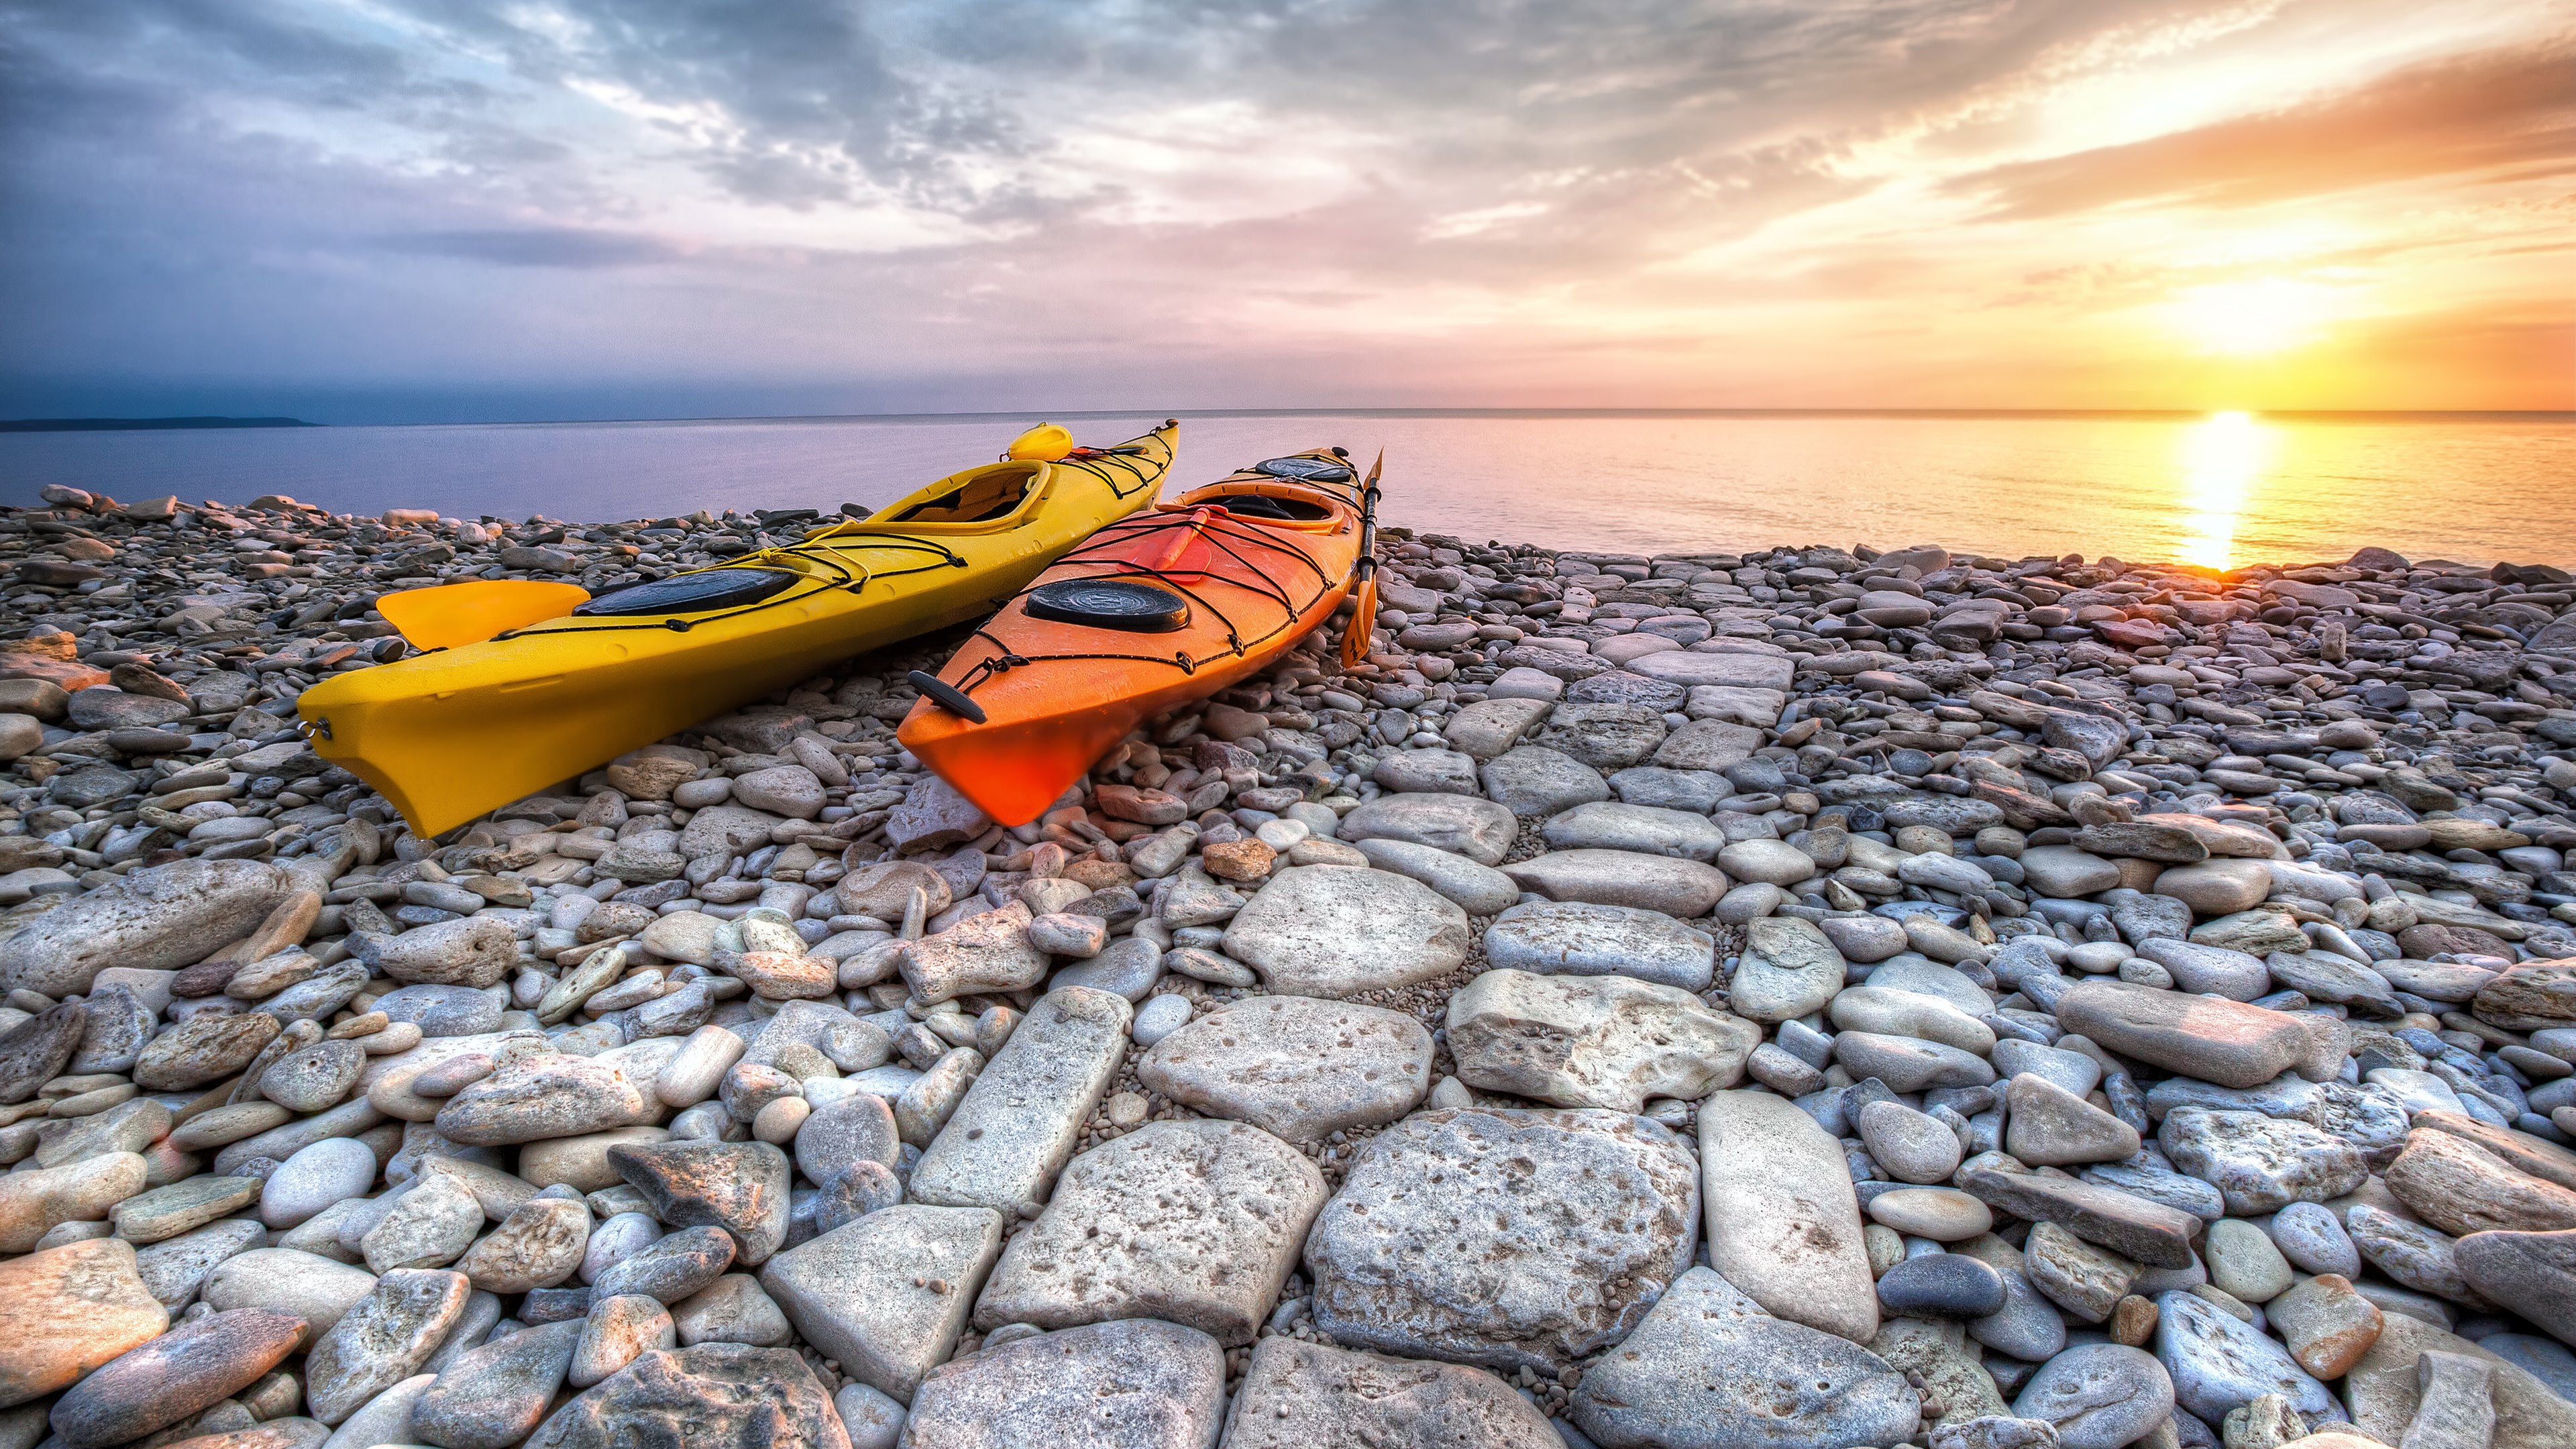 kayak, vehicles, horizon, stone, sunset